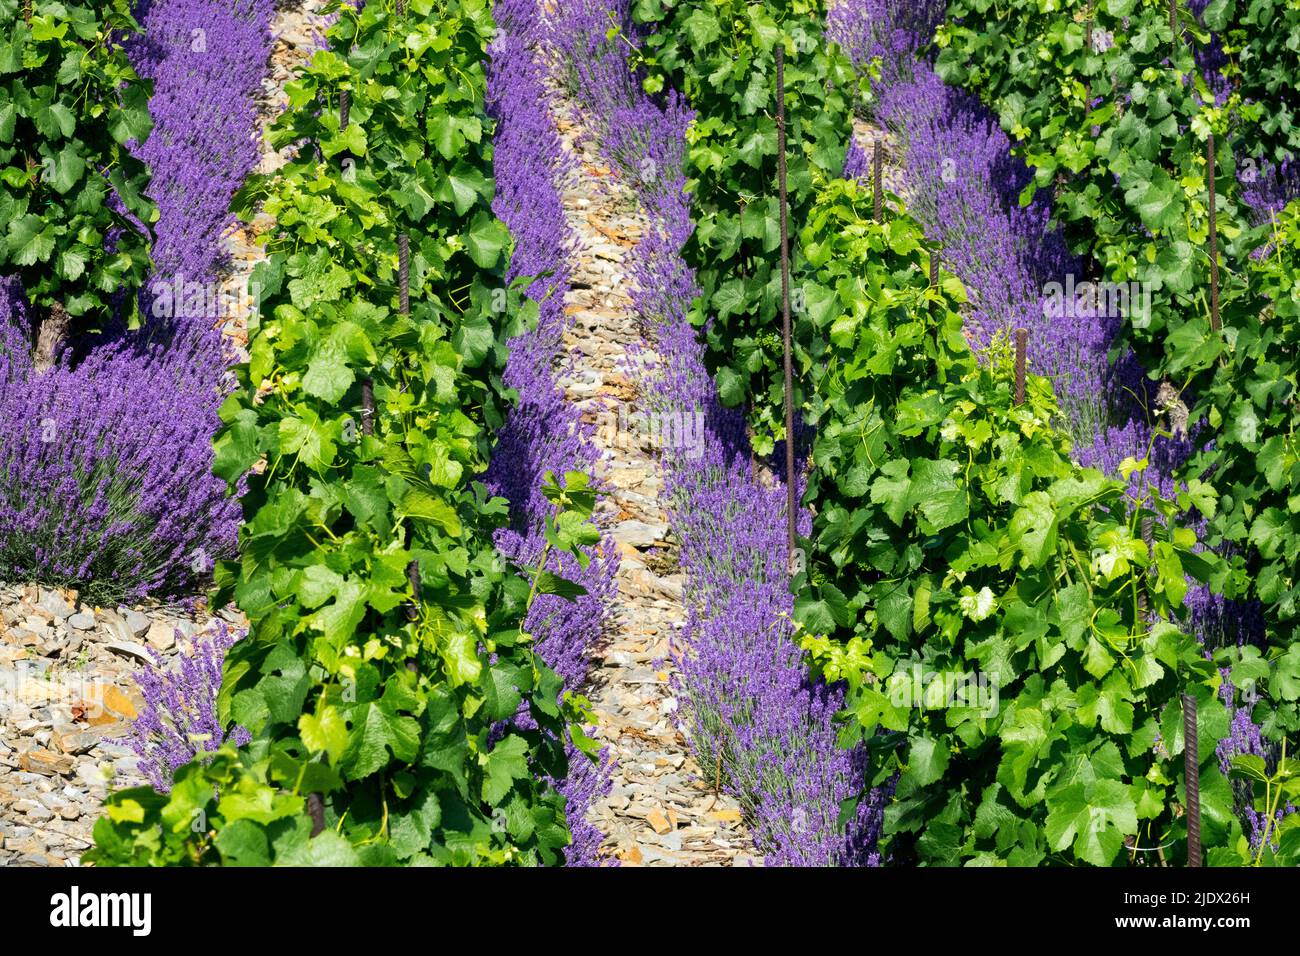 Flowering, Lavandula, Growing, In, Rows, Vineyard, June, Vineyard rows, Lavender, Blooming Stock Photo